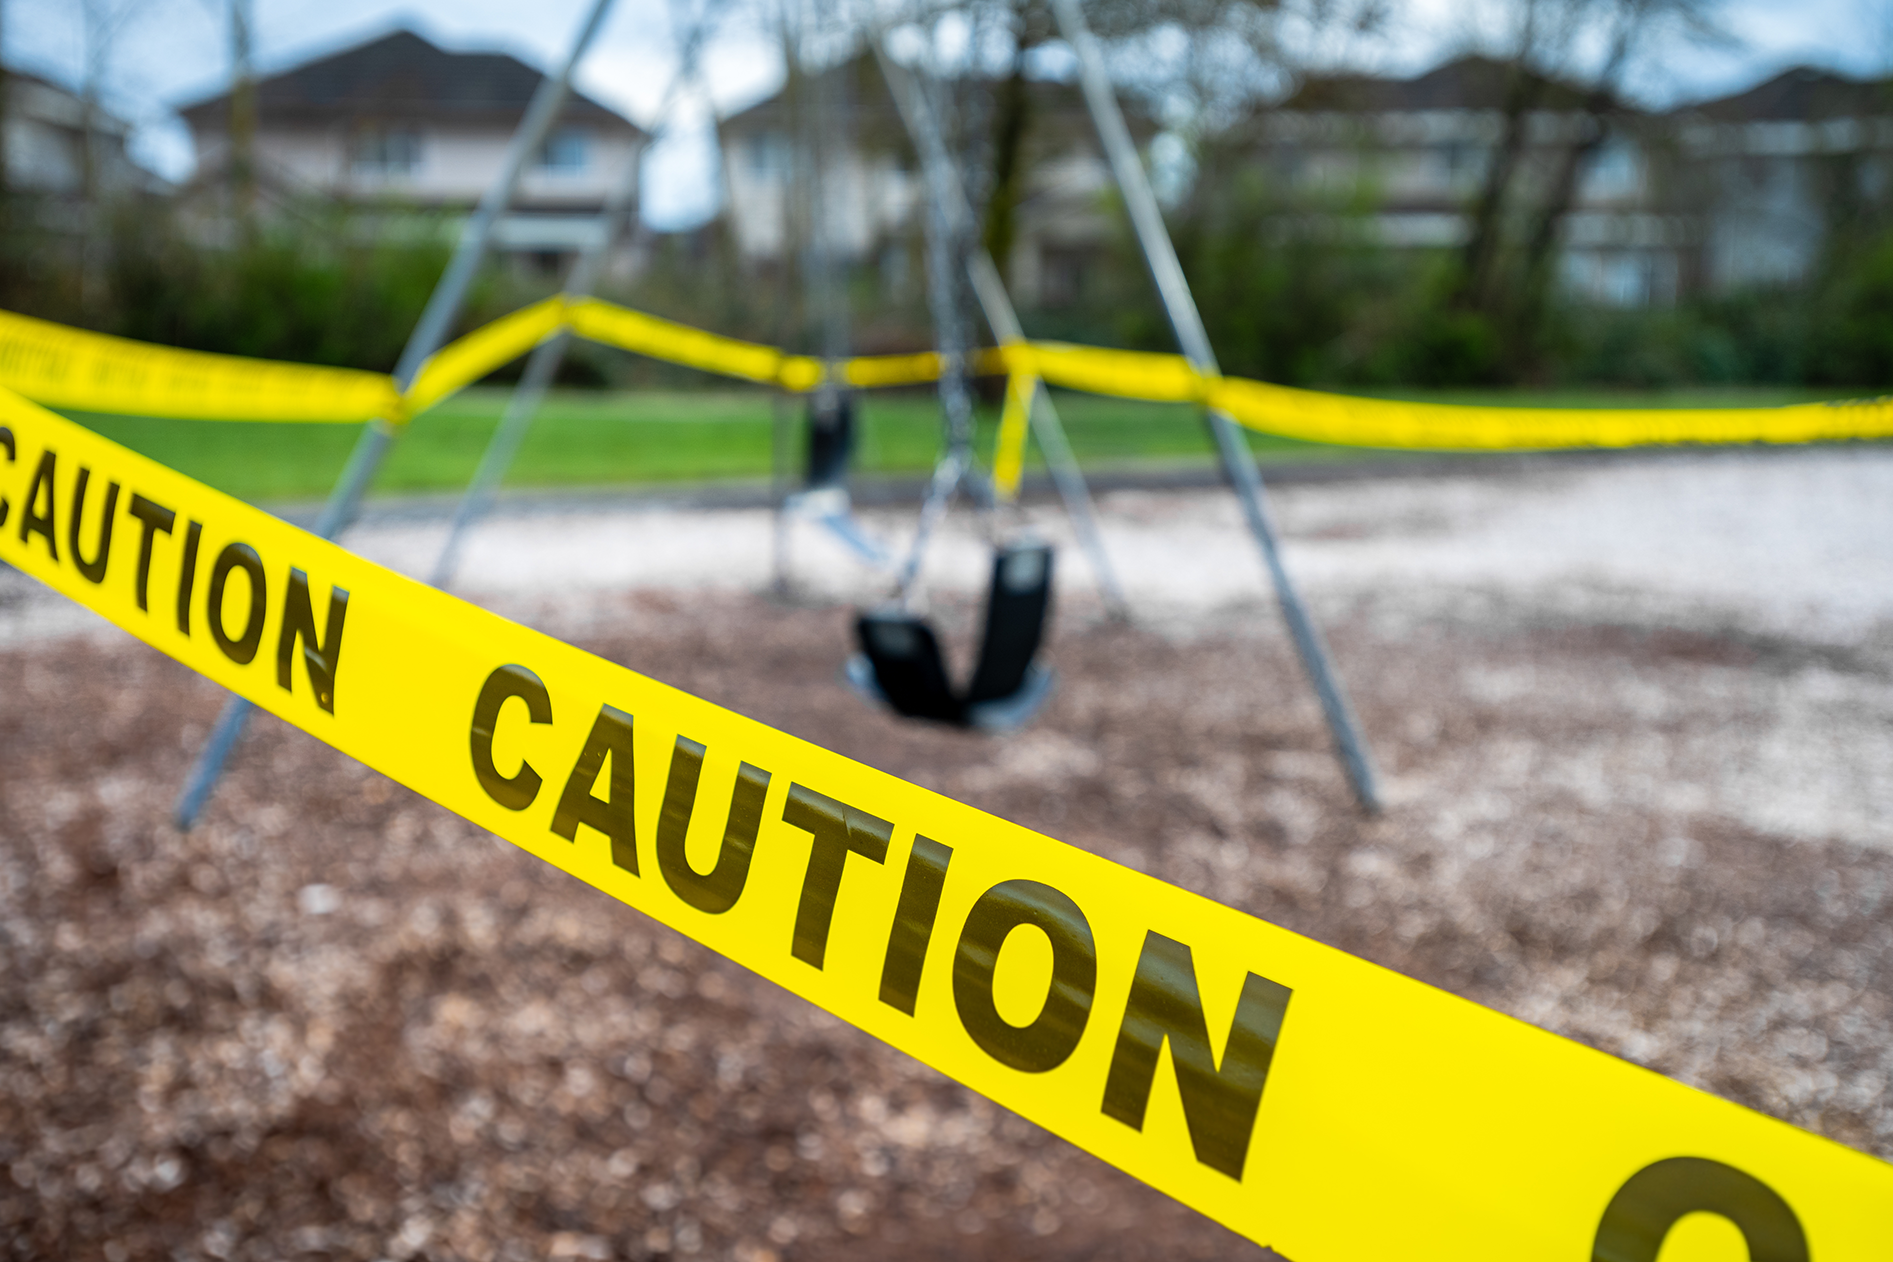 Aussie parents warned of hidden danger in playgrounds